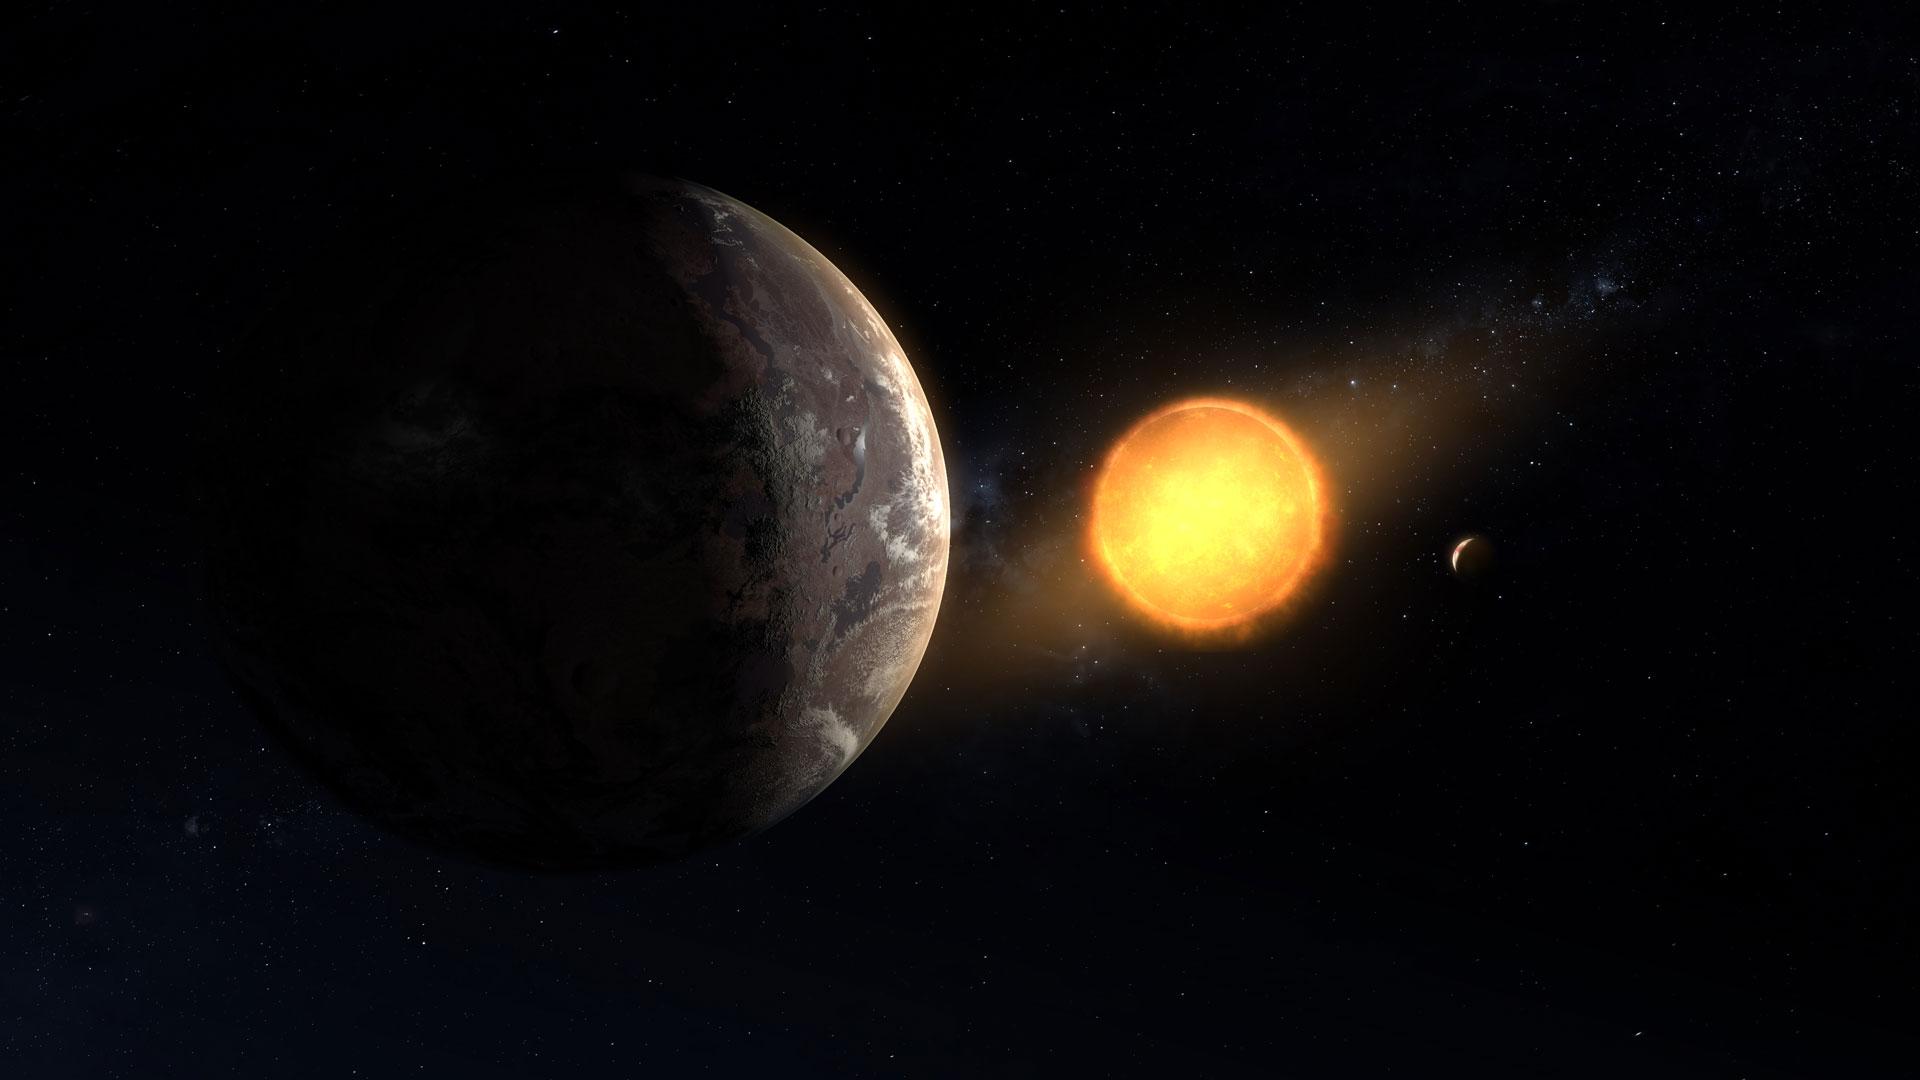 Kepler 1649c